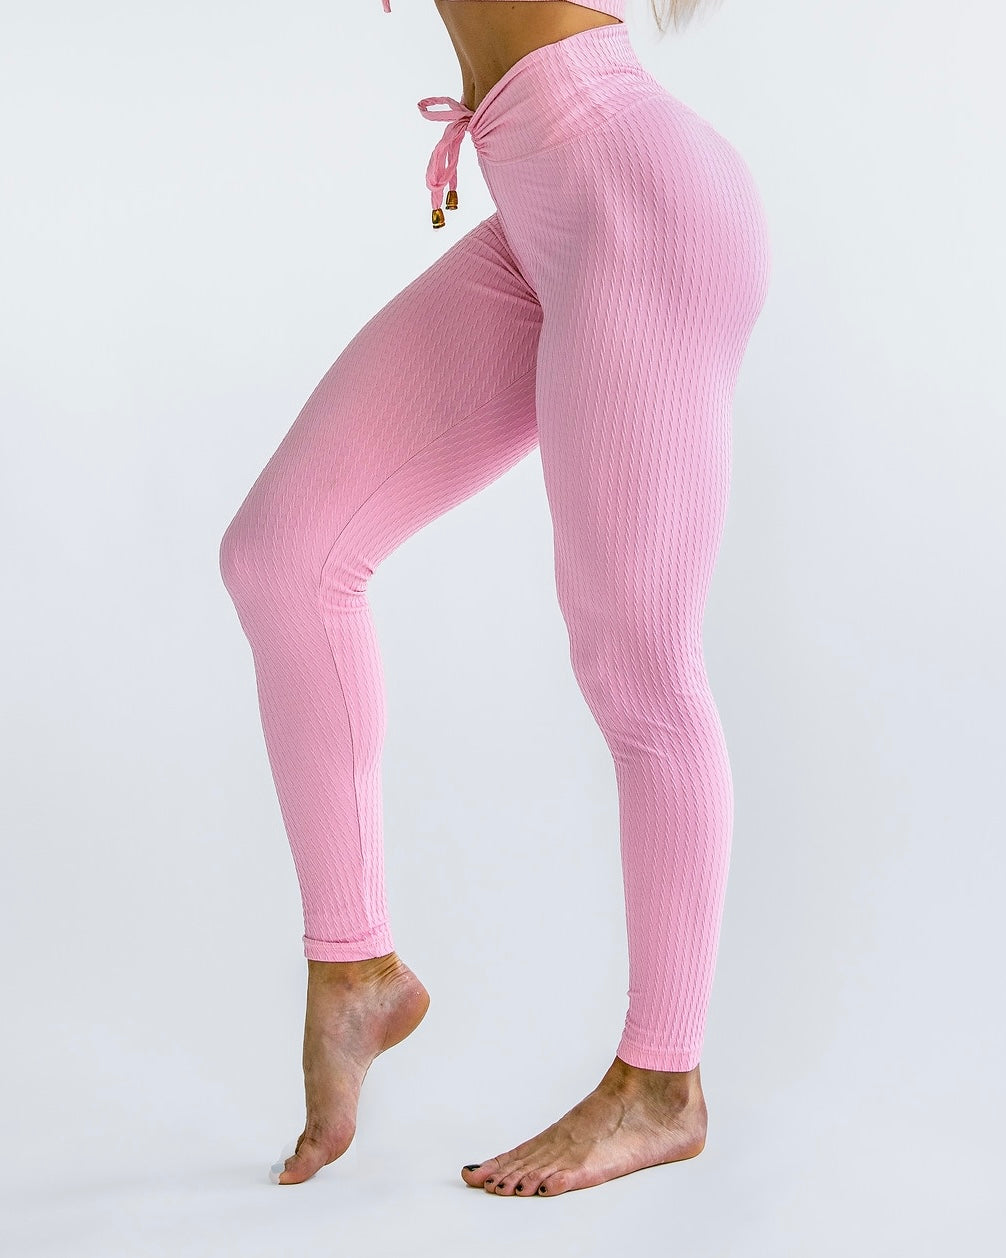 Buy White Leggings for Women by MISSIVA Online